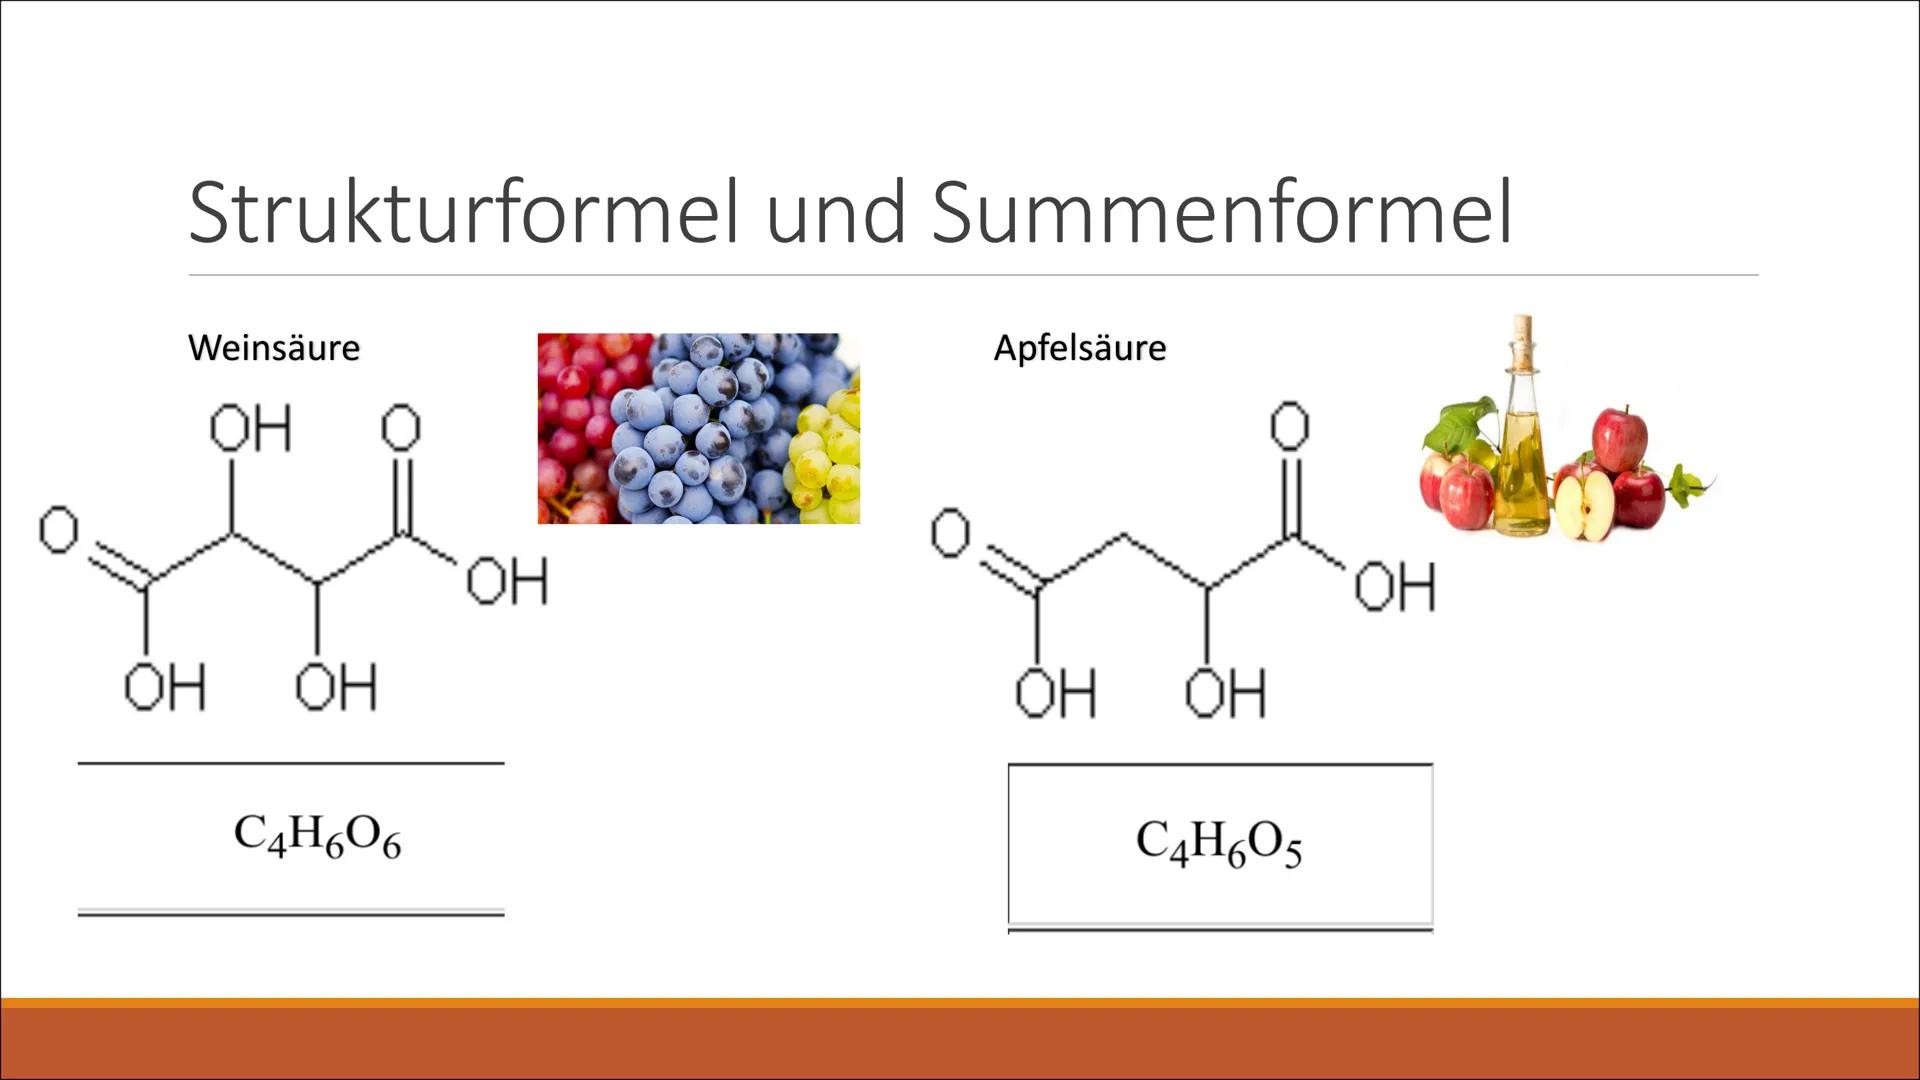 Fruchtsäuren Gliederung
1. Definition von Fruchtsäure
- Weinsäure und Apfelsäure
2. Strukturformel & Summenformel
3.Beschreibung
4. Eigensch